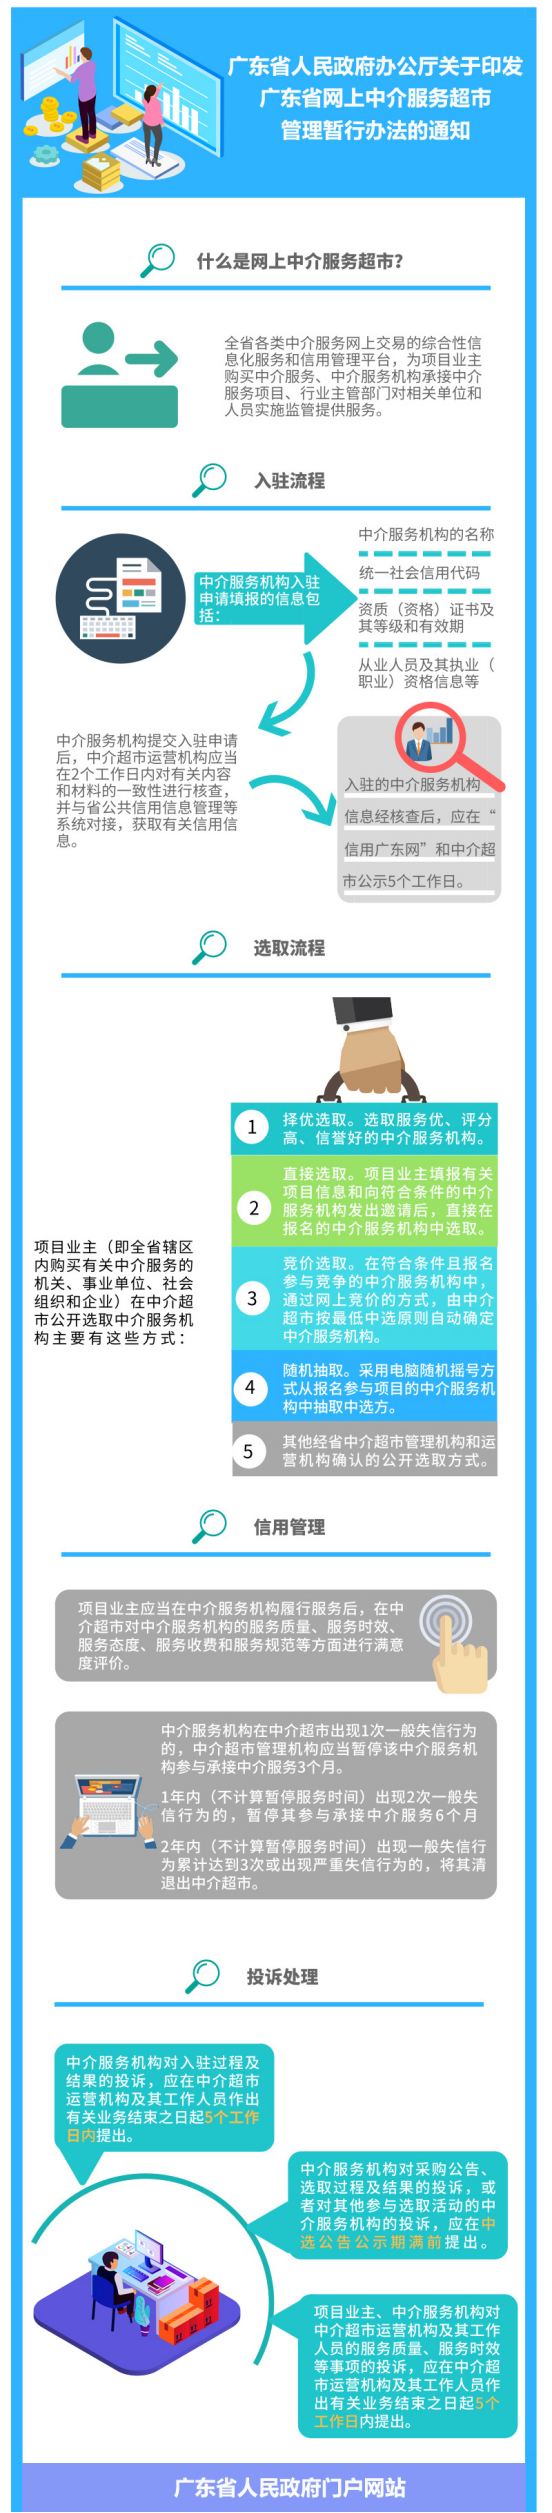 一图读懂广东省网上中介服务超市管理暂行办法.png